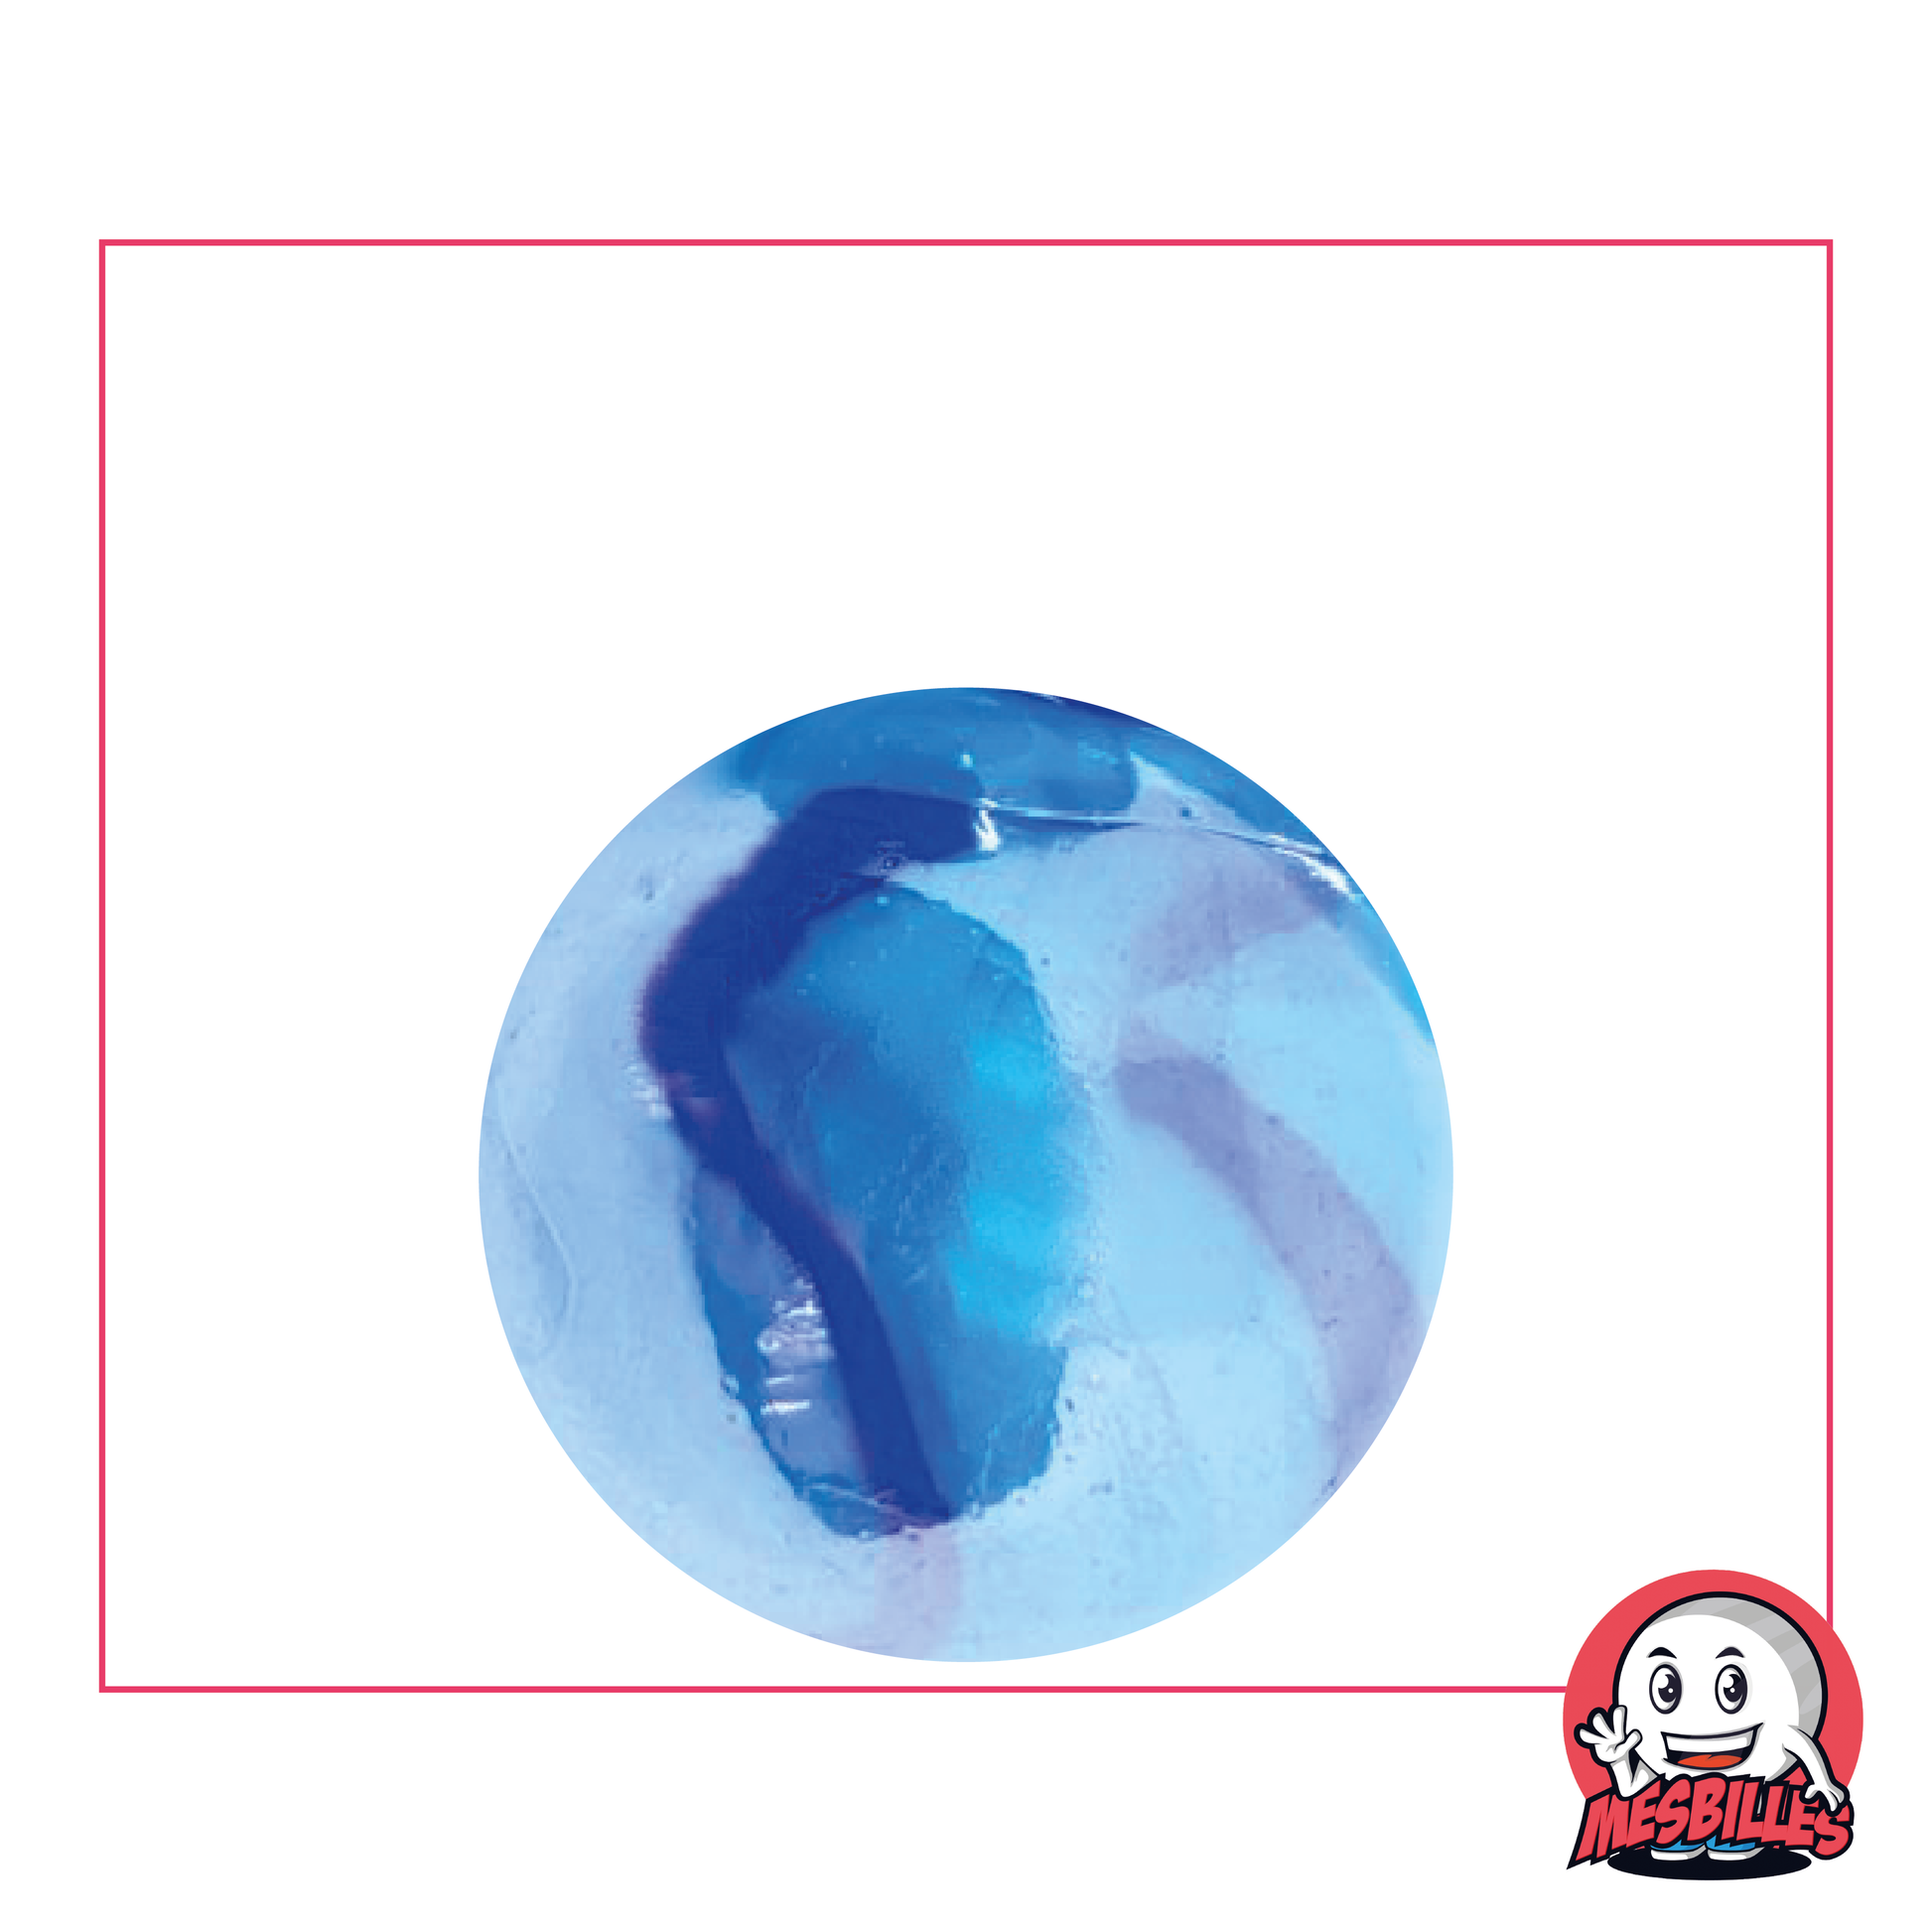 Bille Bleu de Chine, 25 mm, aspect bleu brillant avec rayures plus foncées qui apporte une touche